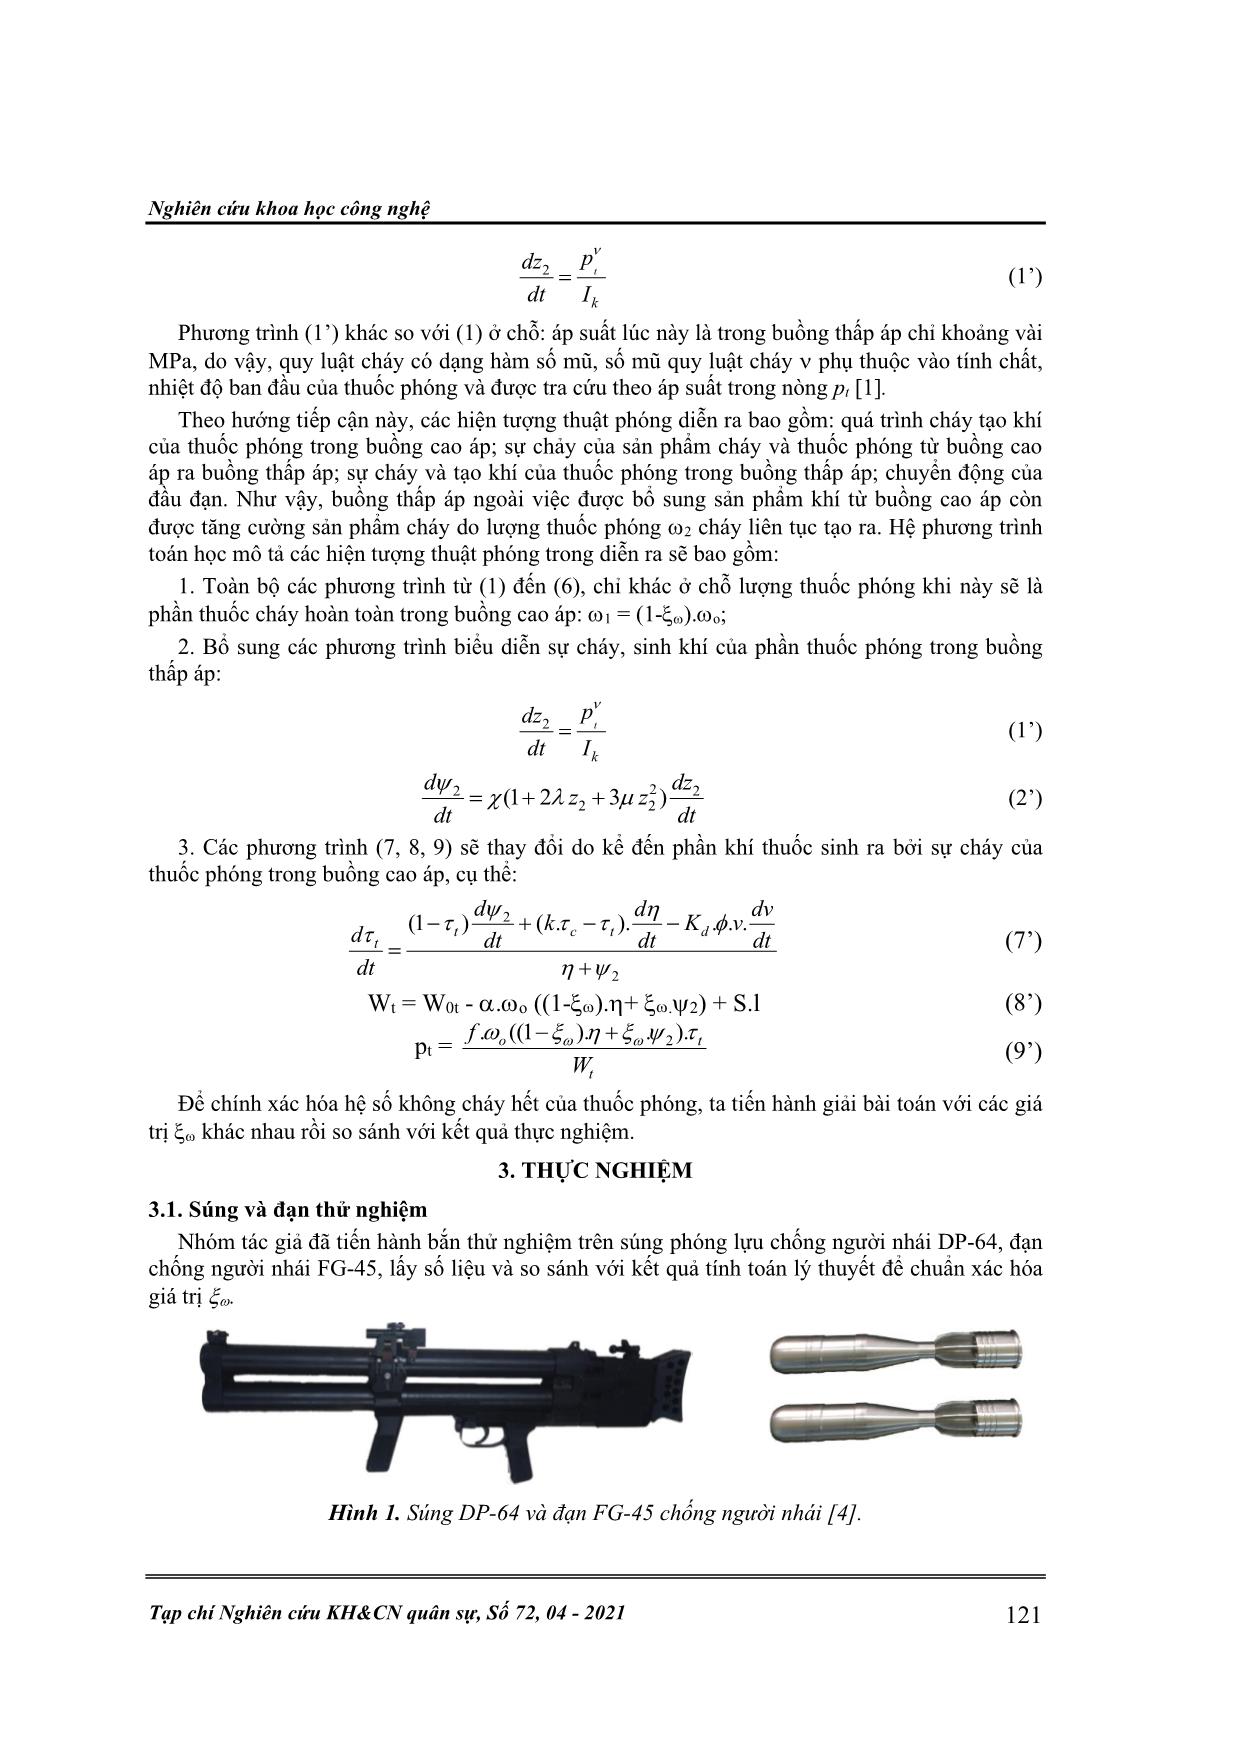 Mô hình thuật phóng trong của hệ súng phóng lựu có tính đến thuốc phóng cháy không hoàn toàn trong buồng cao áp trang 3